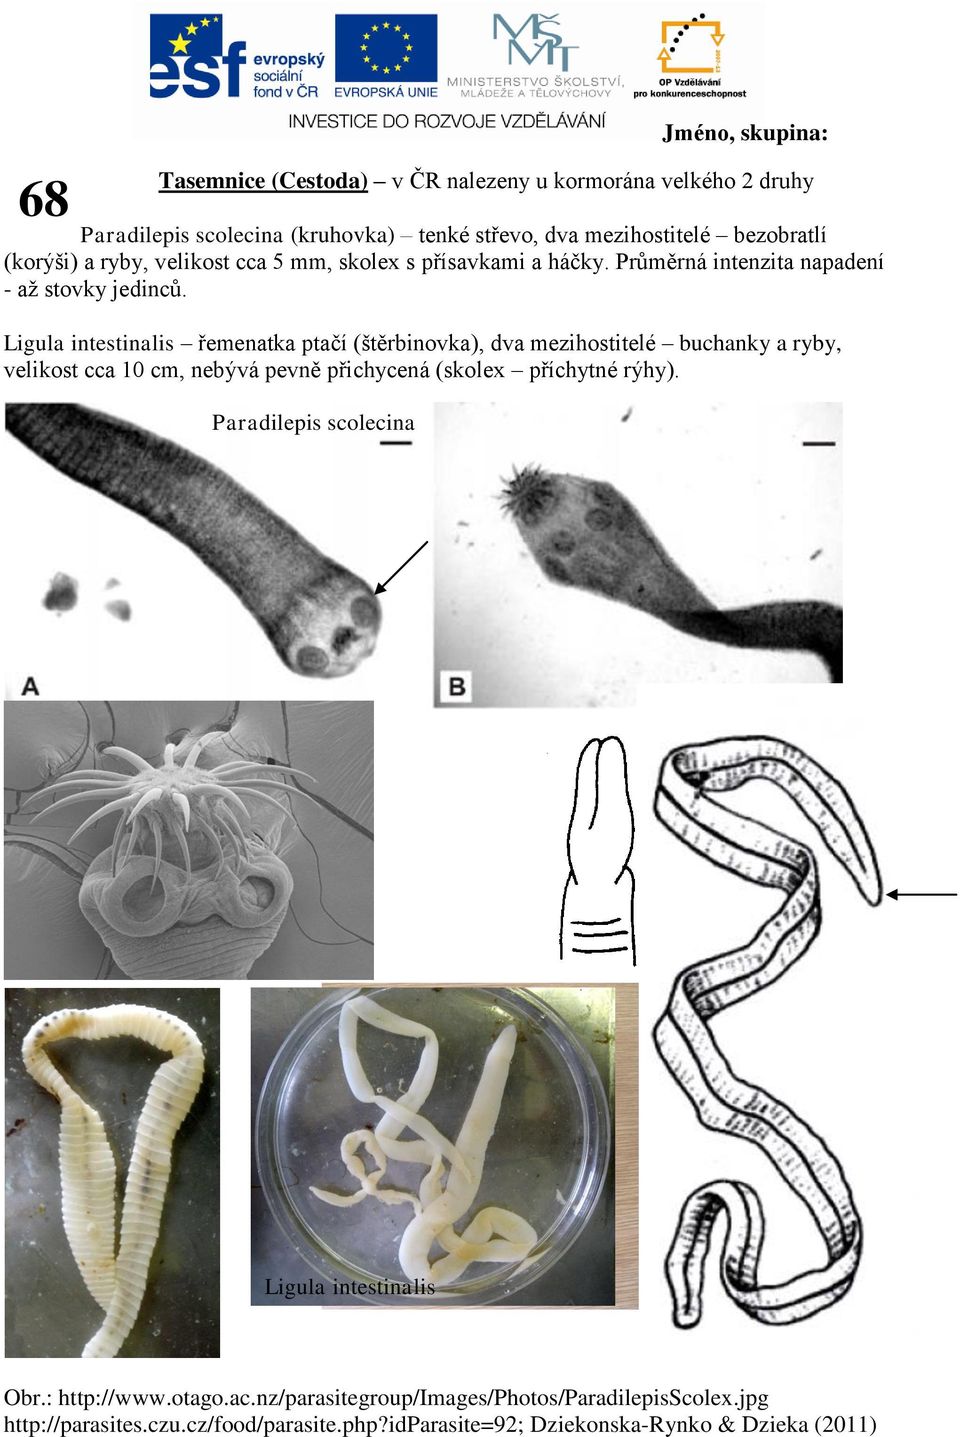 Ligula intestinalis řemenatka ptačí (štěrbinovka), dva mezihostitelé buchanky a ryby, velikost cca 10 cm, nebývá pevně přichycená (skolex příchytné rýhy).